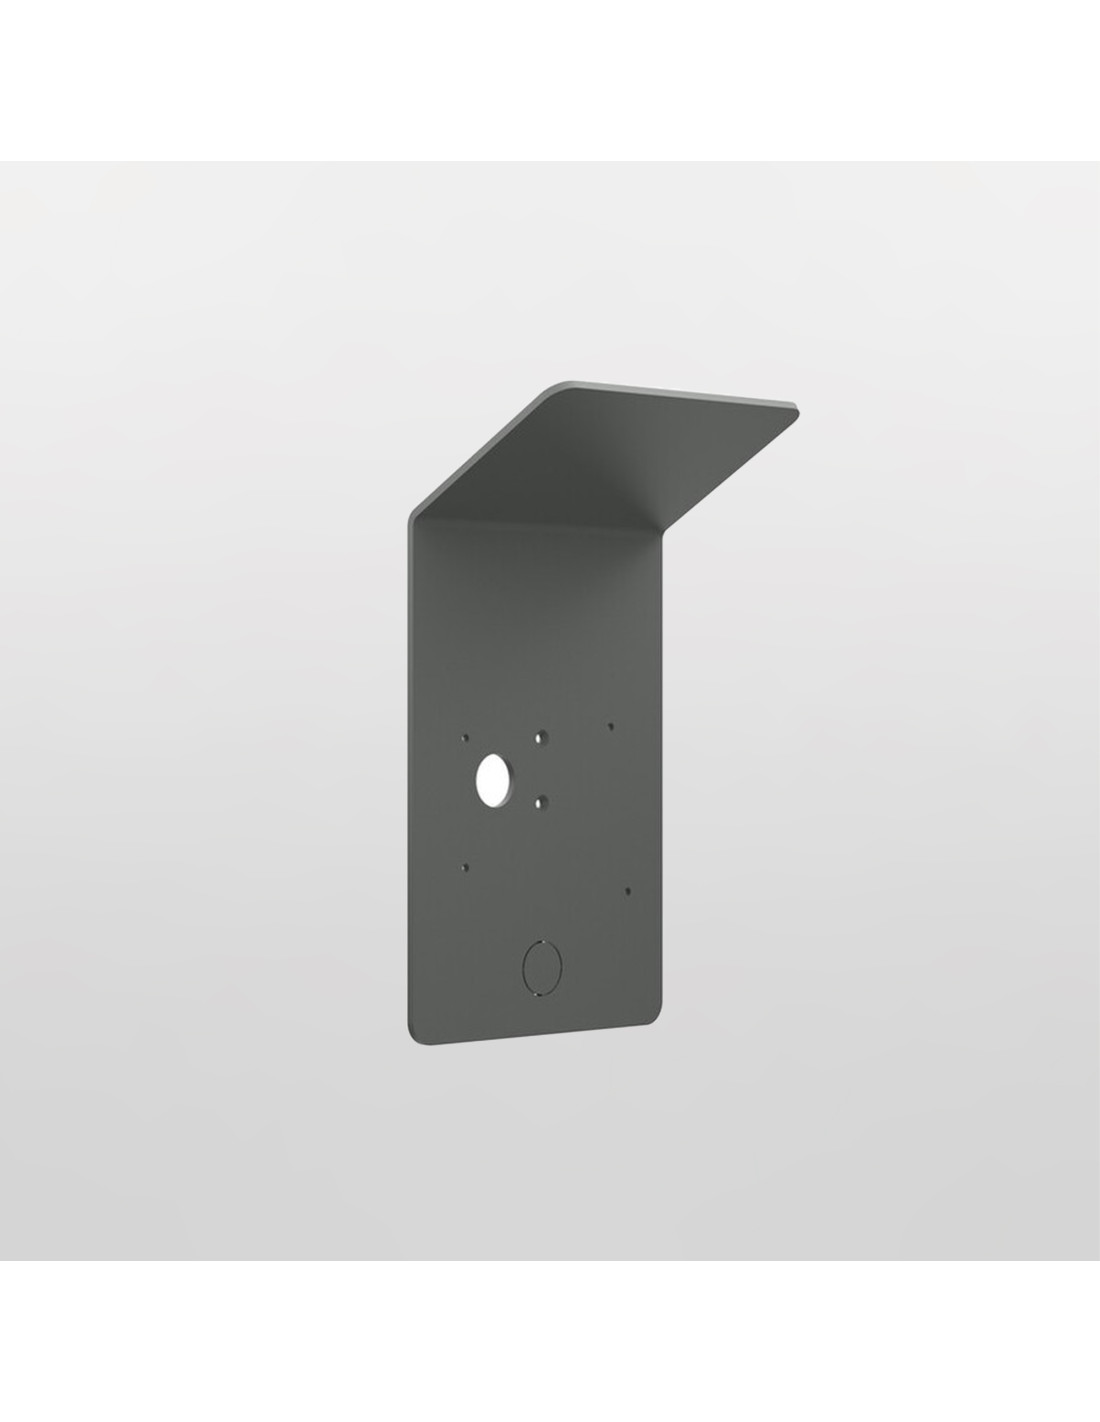 Wallbox Pedestal (Eiffel / Copper SB)